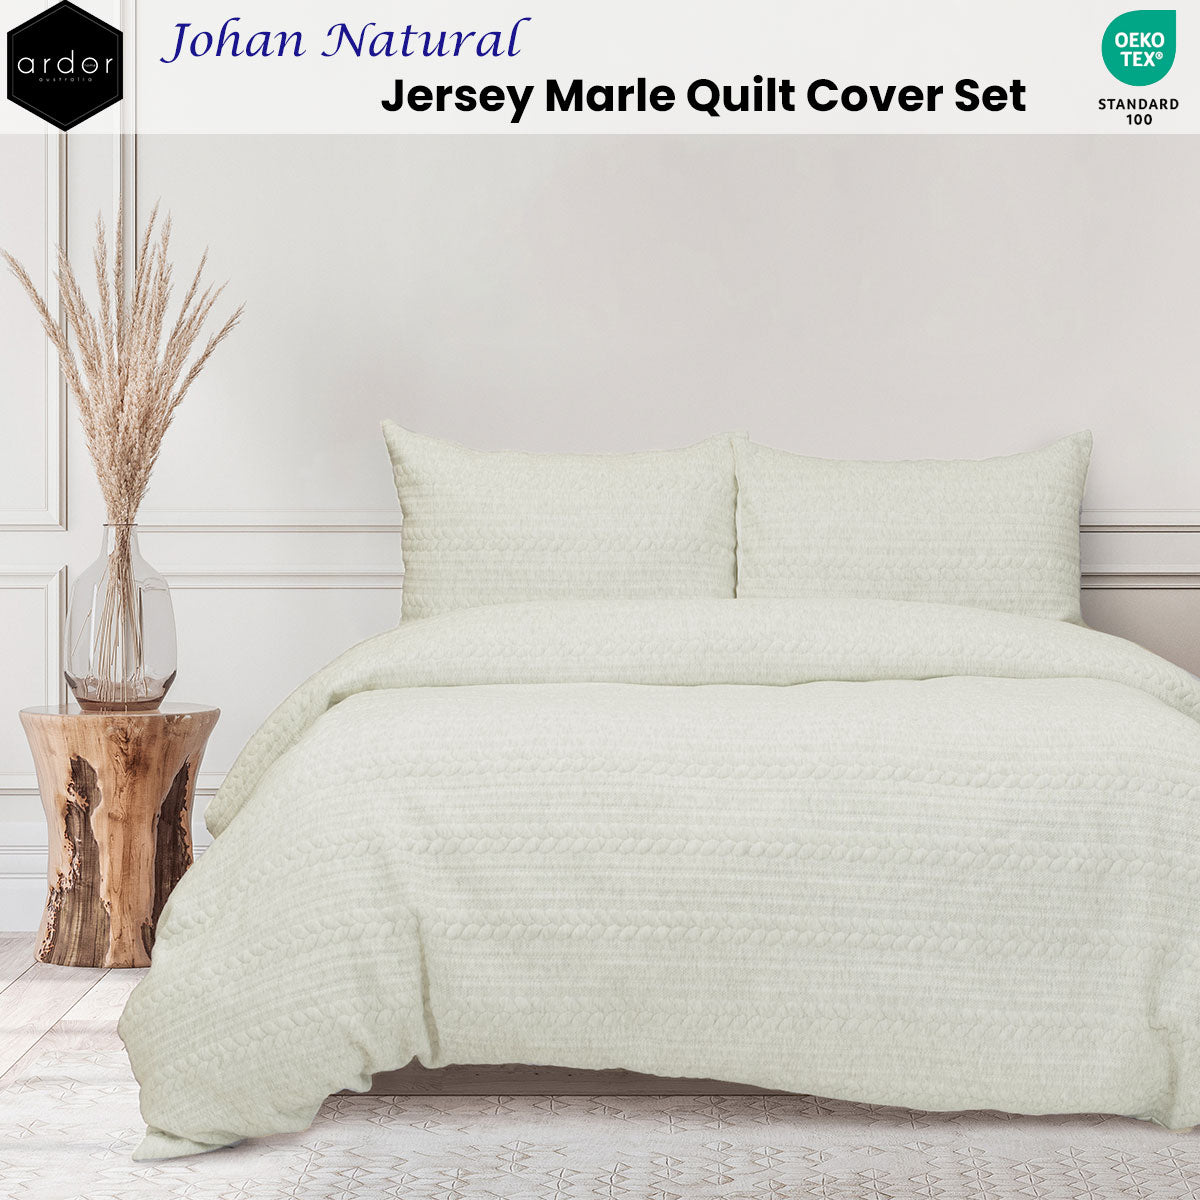 Ardor Johan Natural Jersey Marle Quilt Cover Set Queen